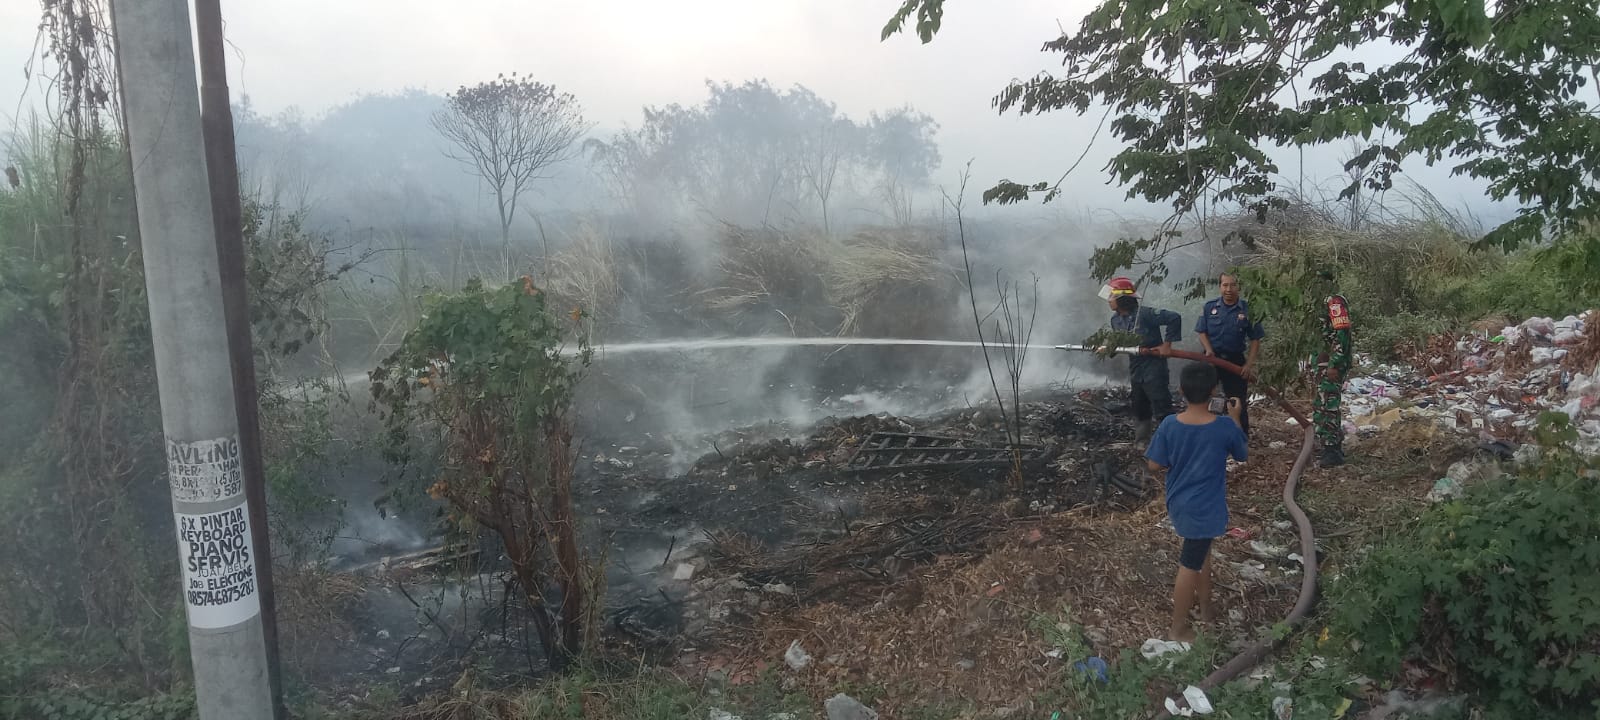 Kebakaran Lahan Kosong (Ilalang) di Perumahan Bumi Citra Fajar, Desa Pucanganom, Kecamatan Sidoarjo